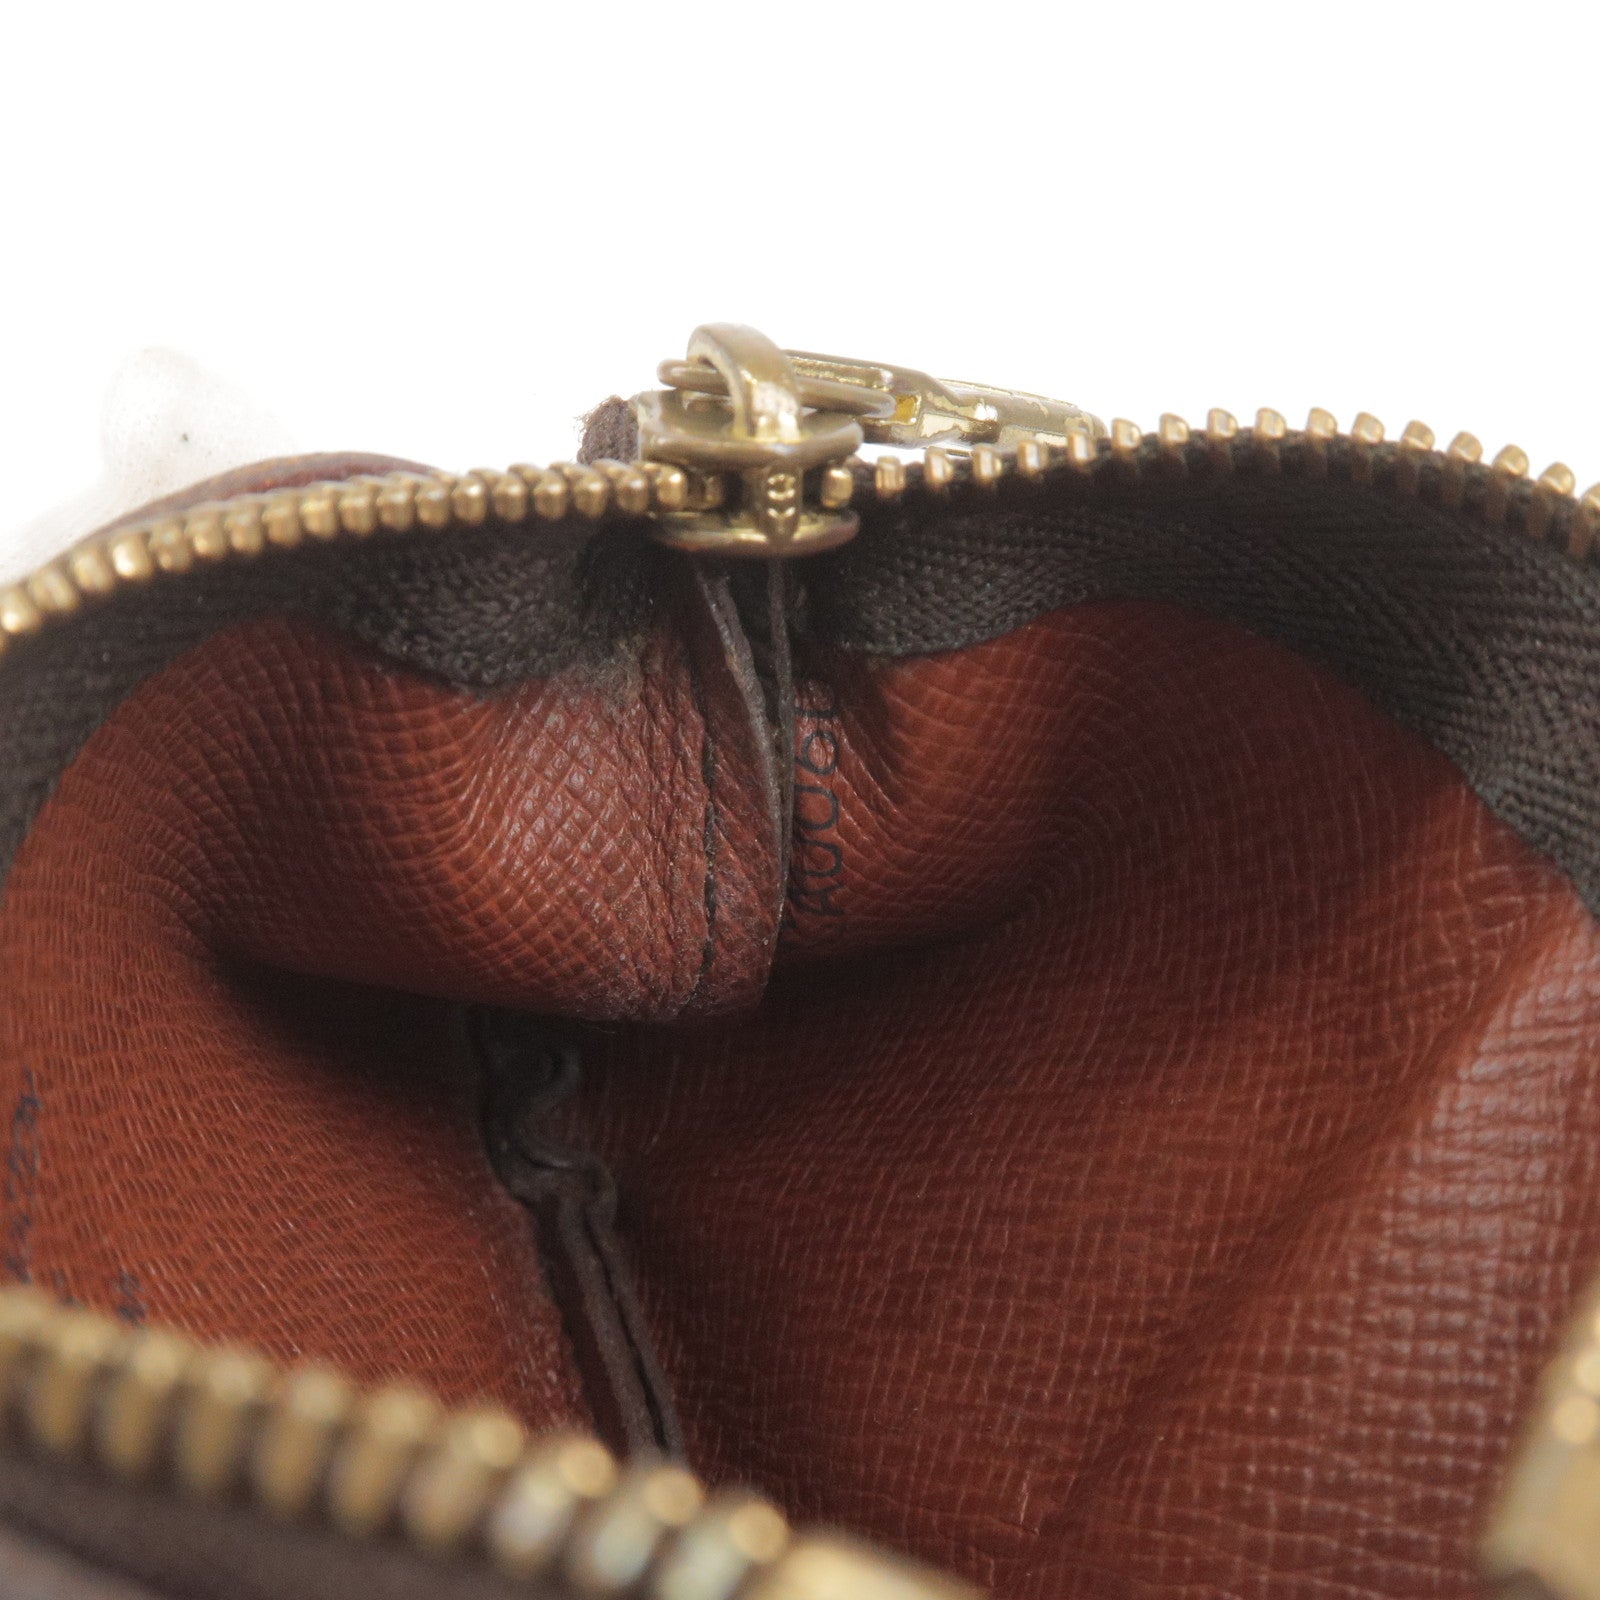 SOLD OUT—— Louis Vuitton Vintage Pochette Accessoires in Brown Epi